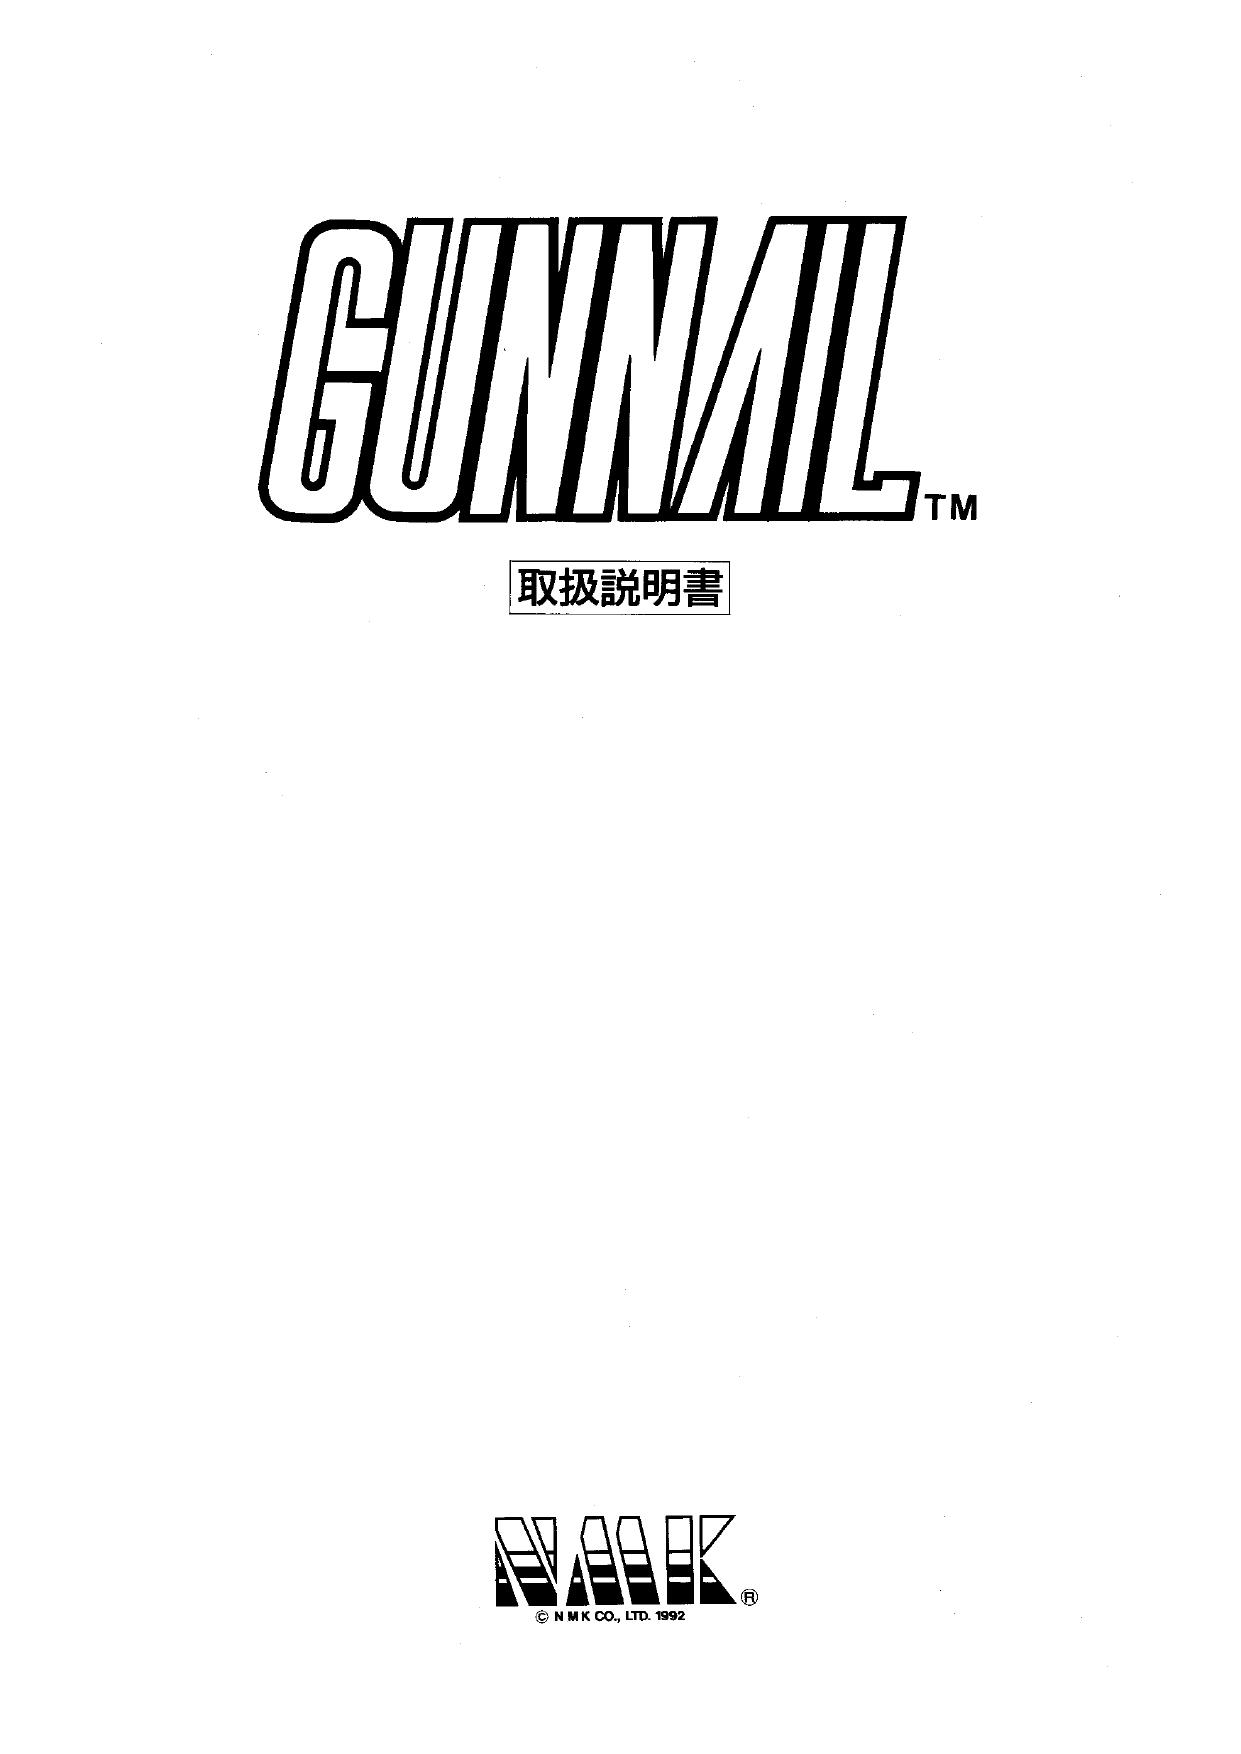 Gunnail